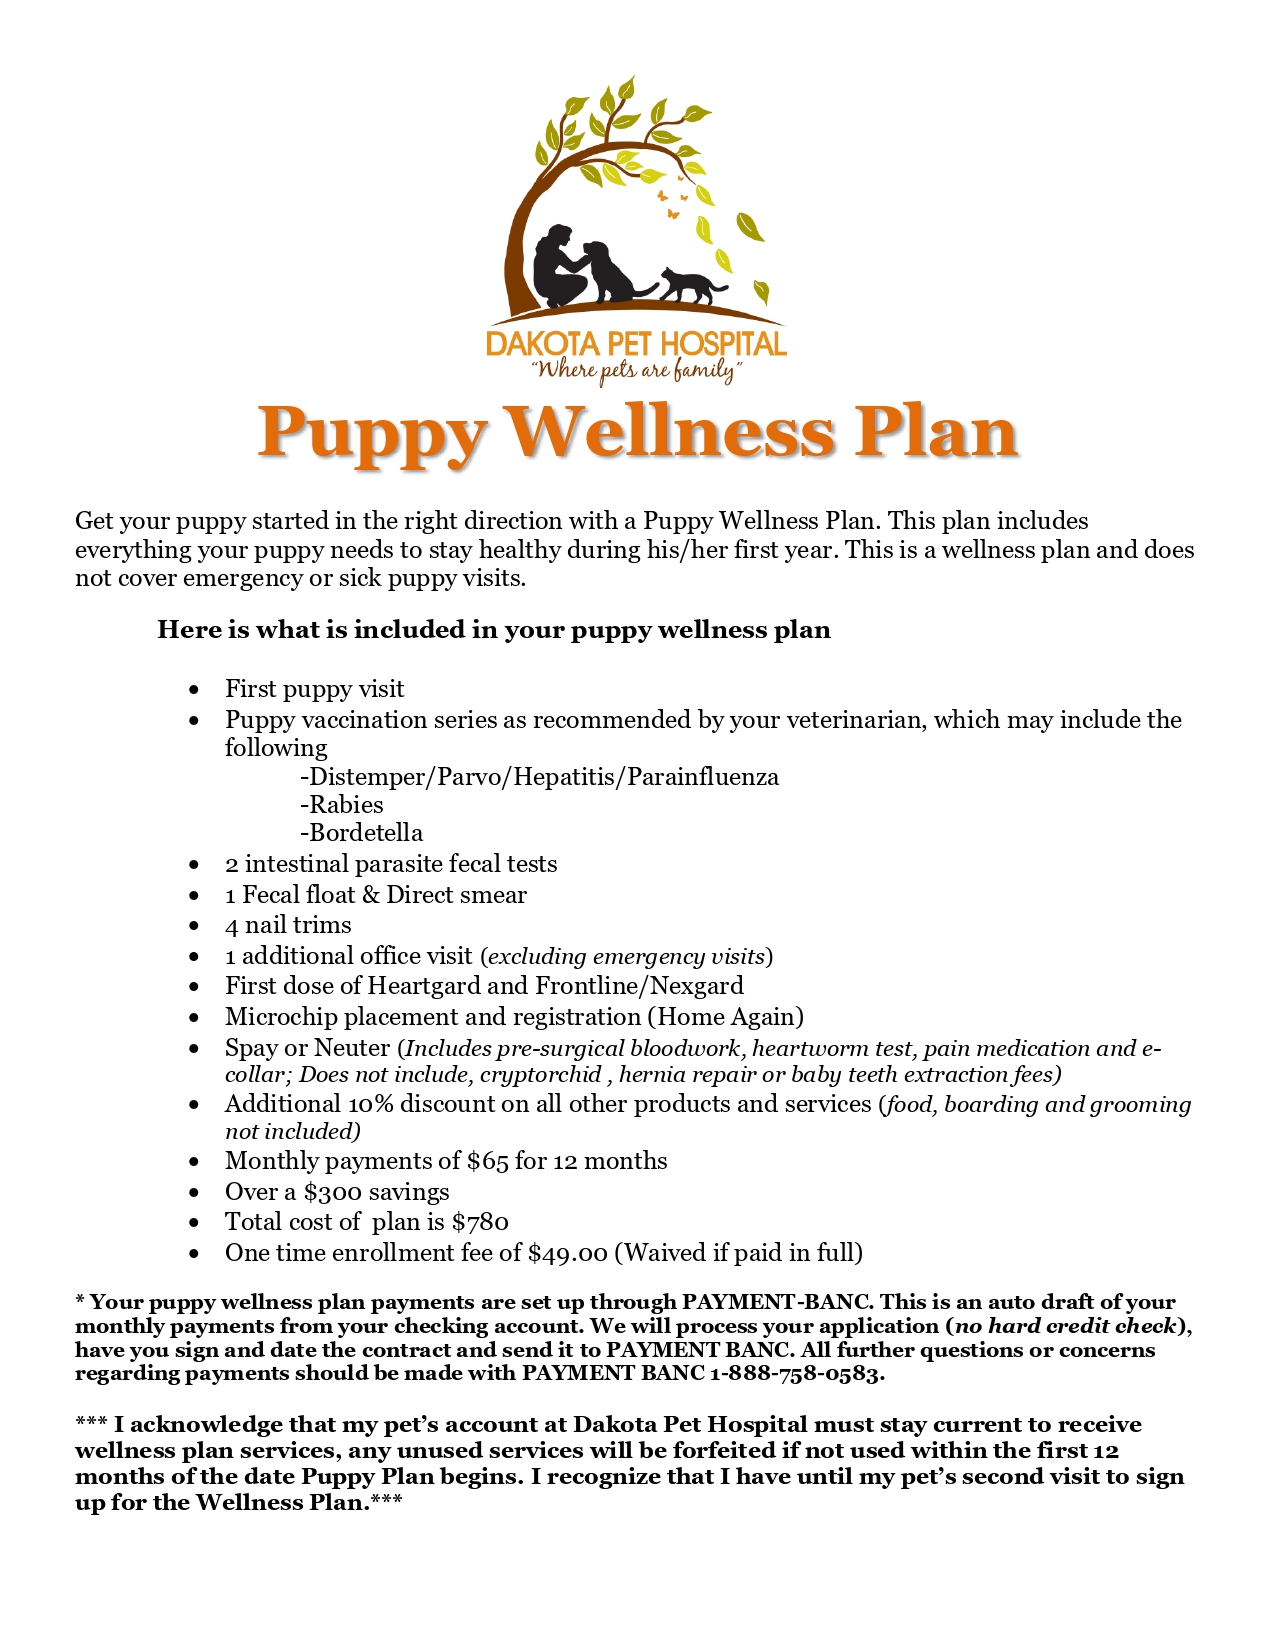 Puppy wellness plan